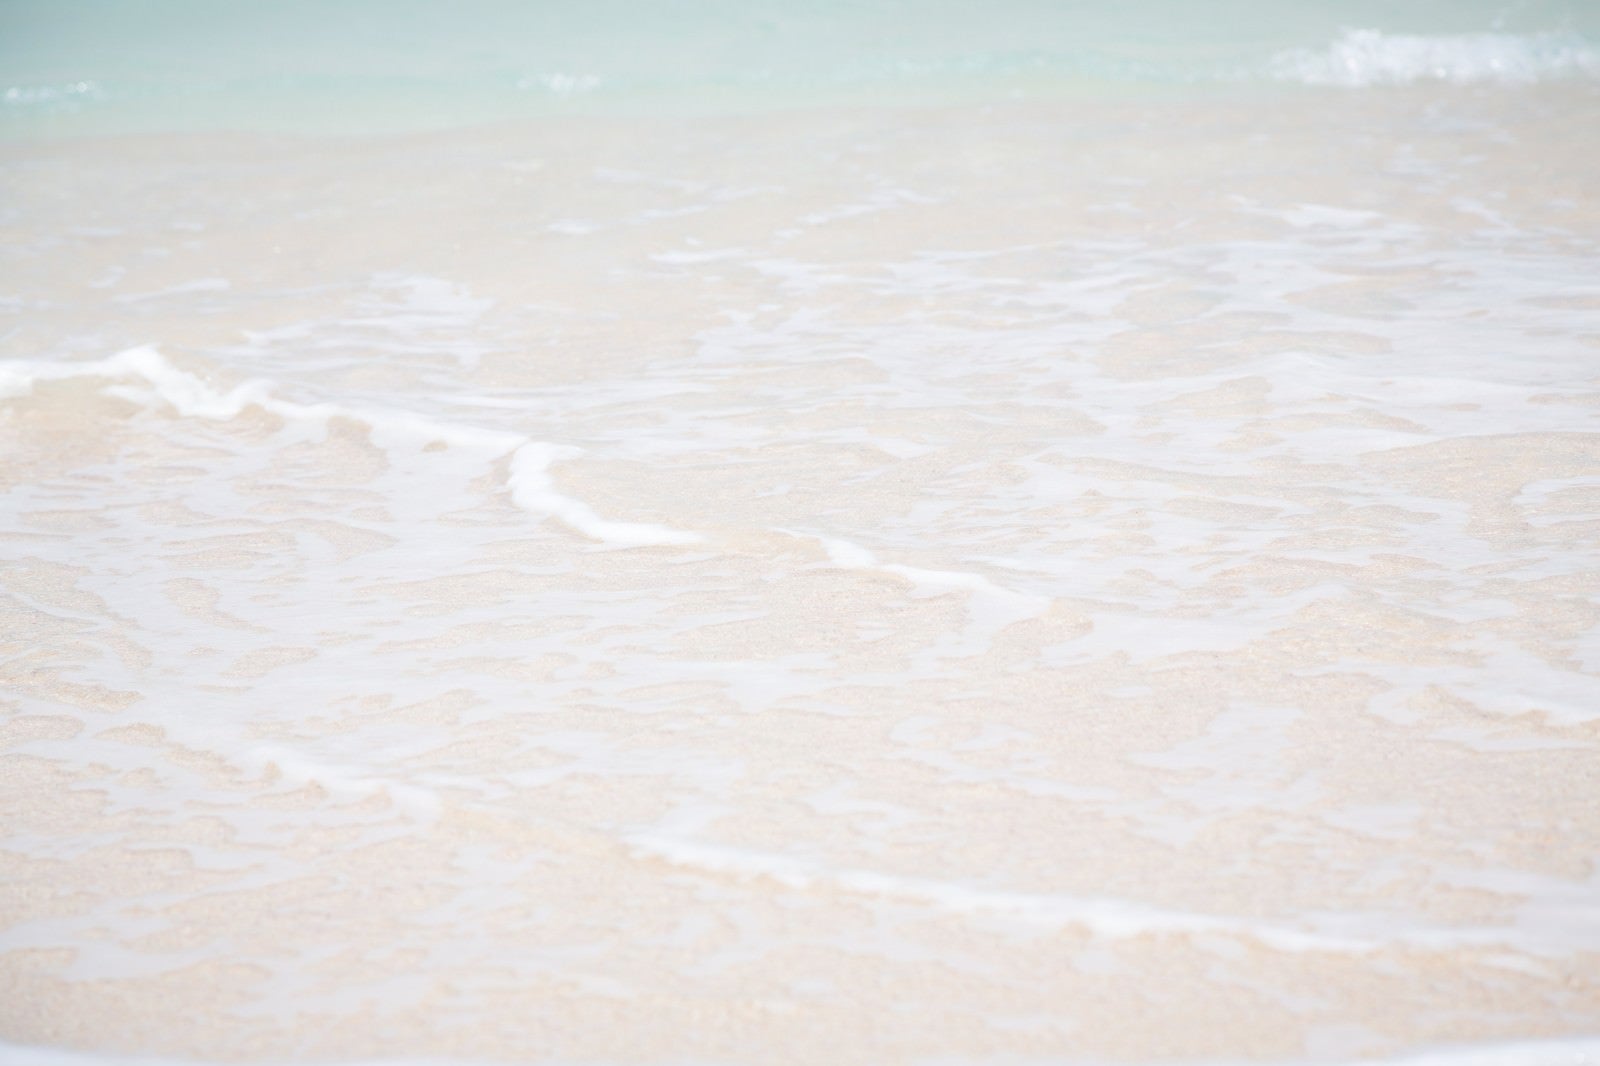 「砂浜の波」の写真